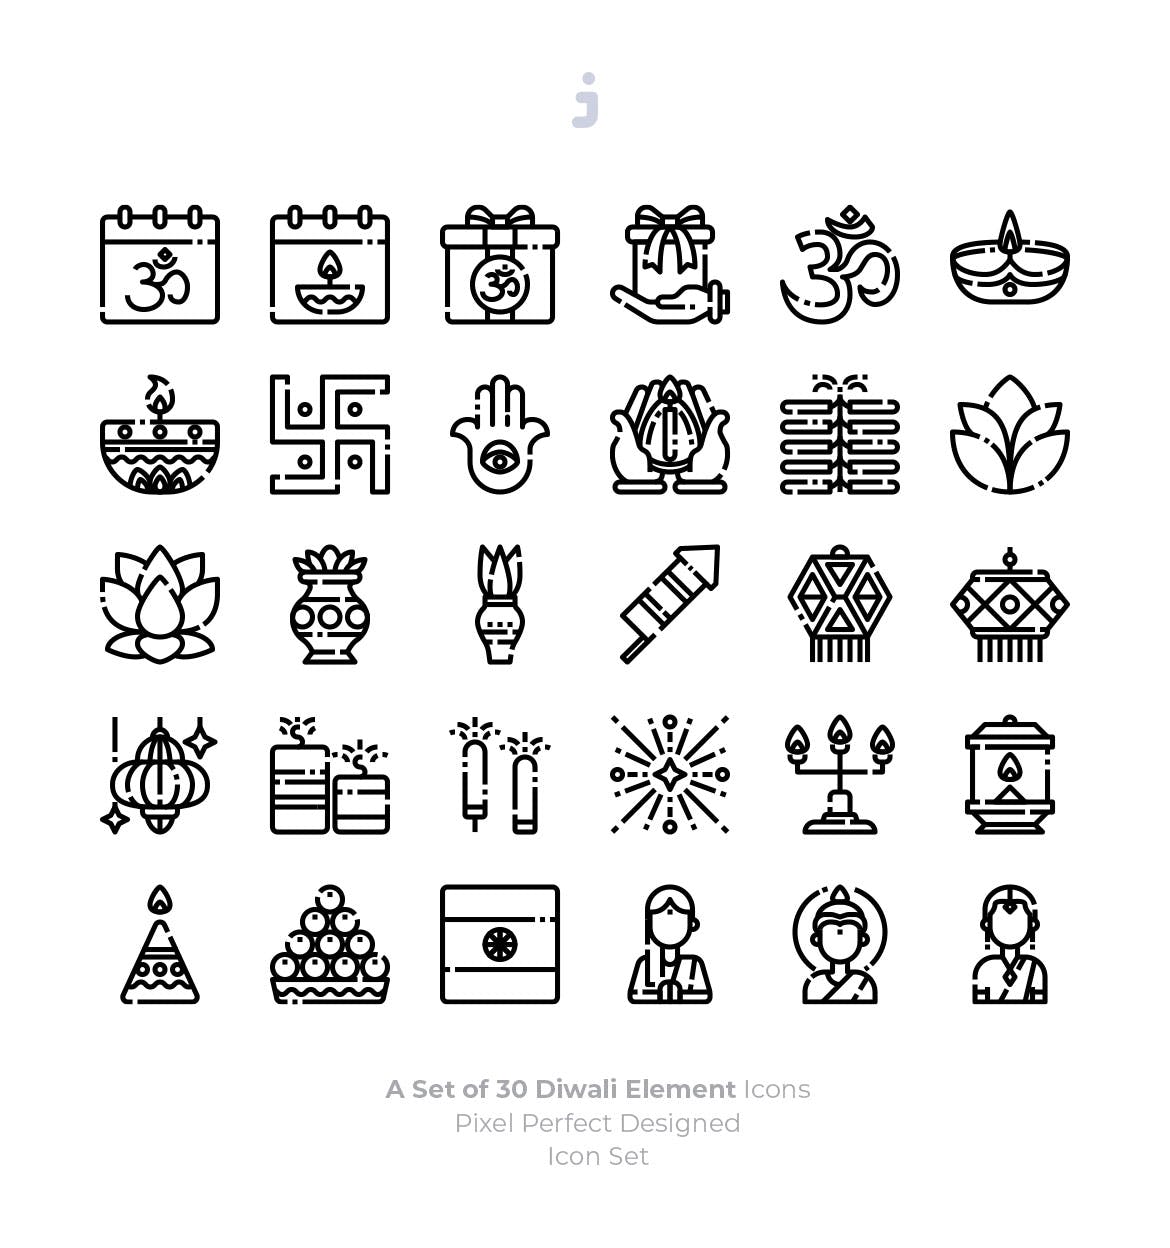 30枚印度万灯节排灯节节日主题图标素材 30 Diwali Icons插图(2)